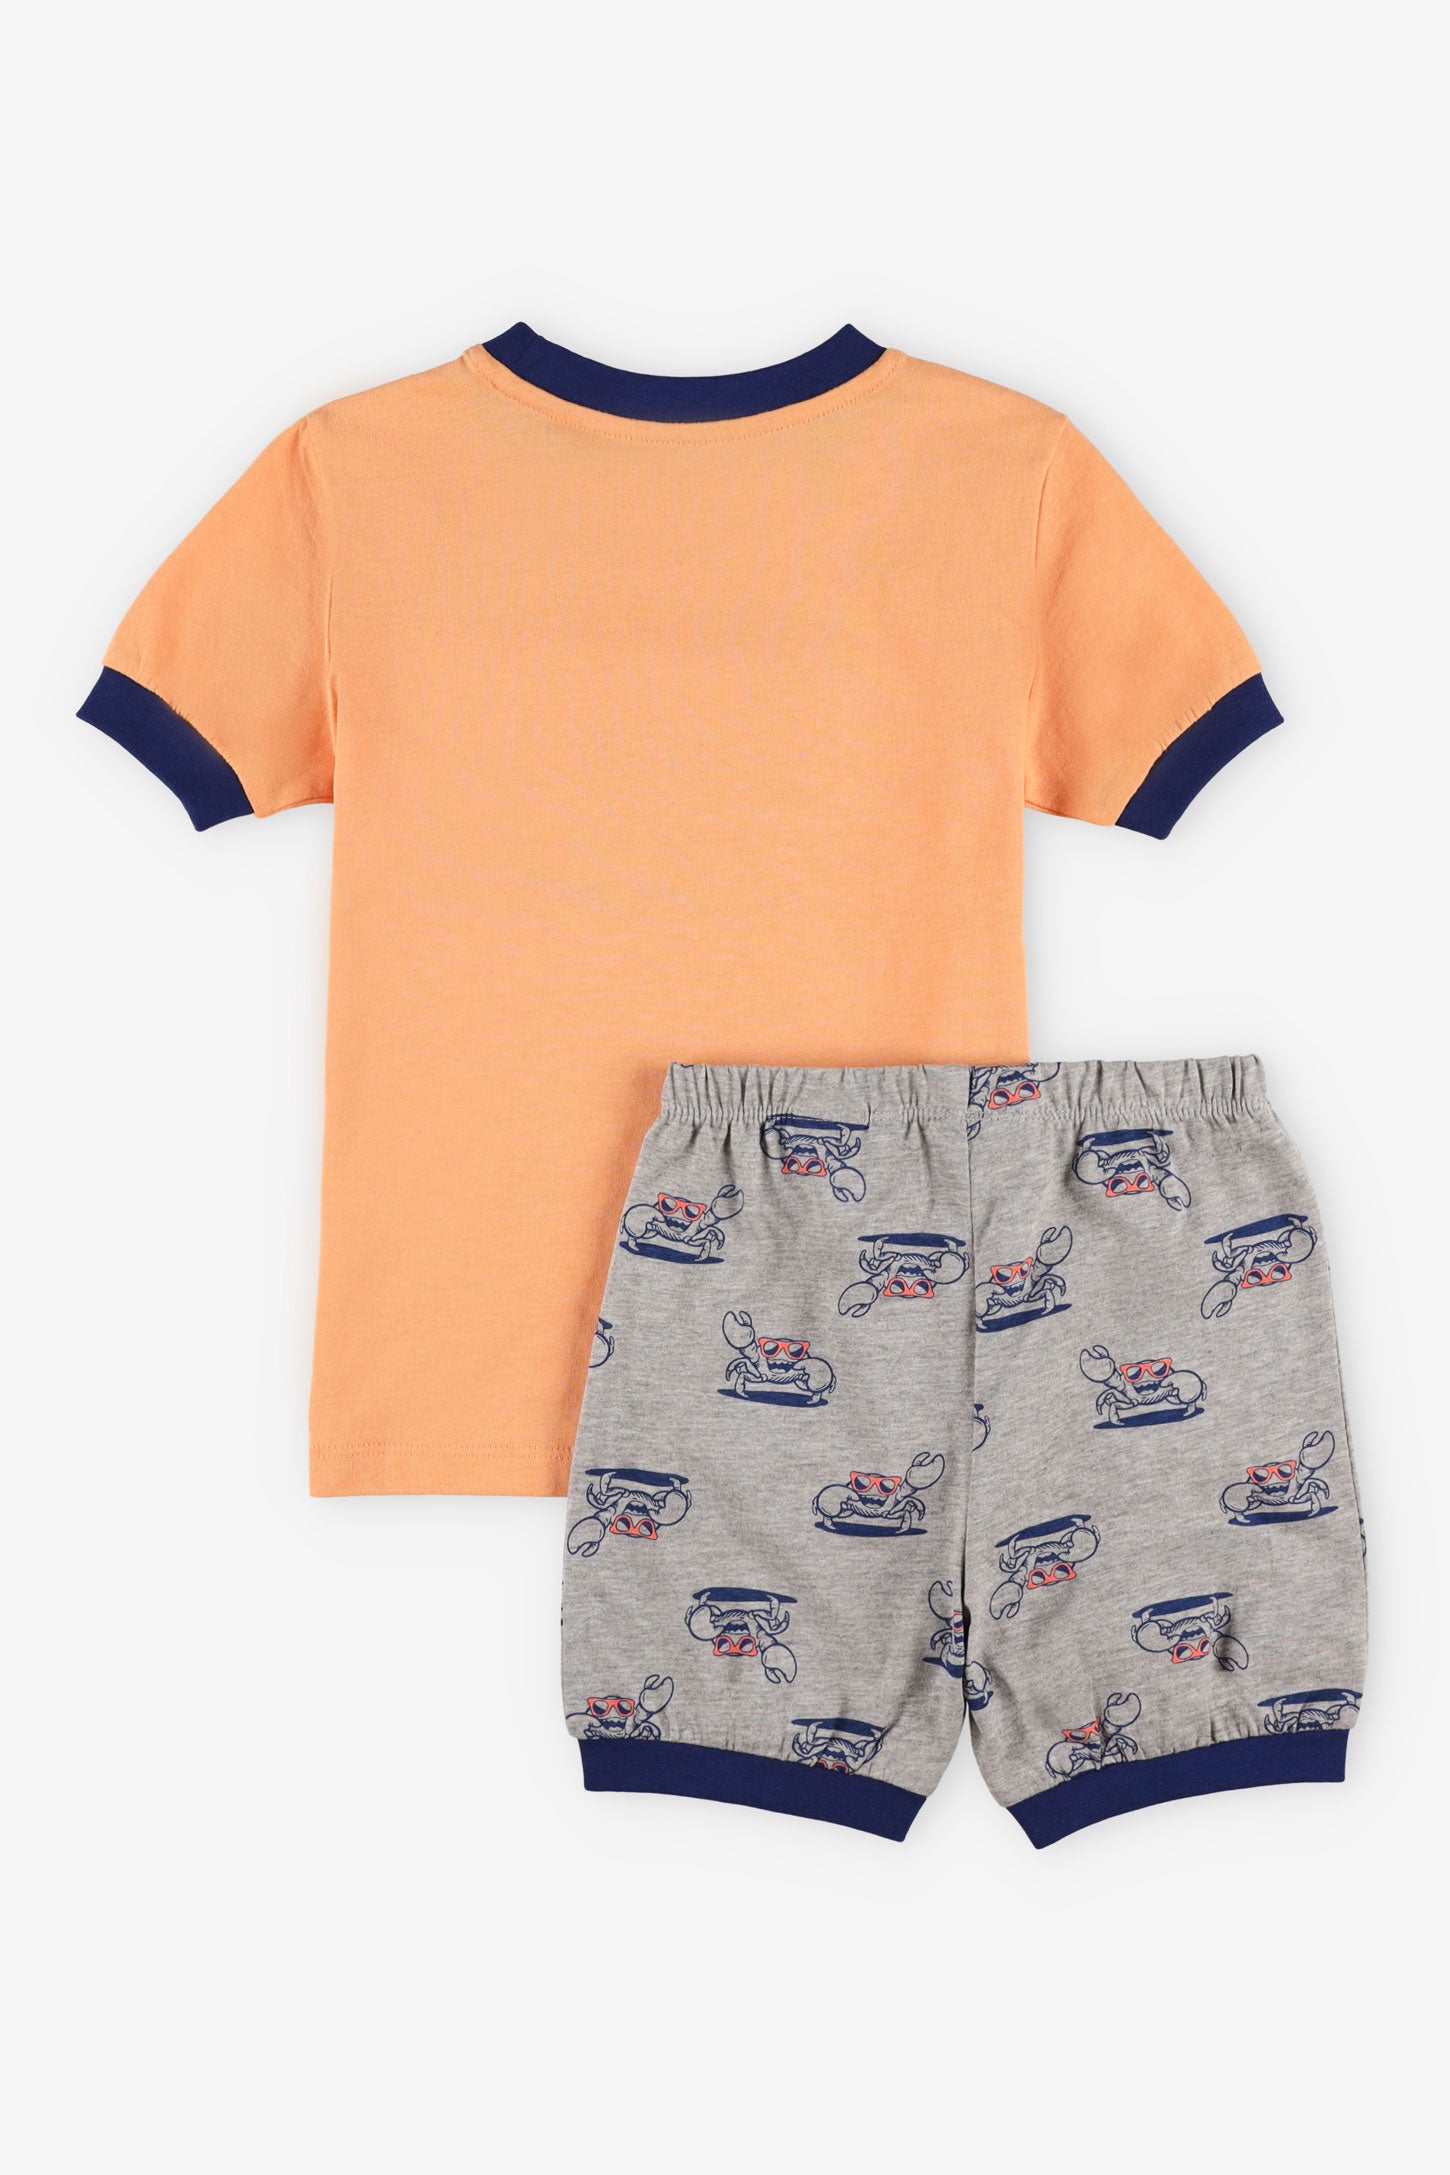 Pyjama 2-pièces t-shirt short coton, 2/35$ - Enfant garçon && ORANGE